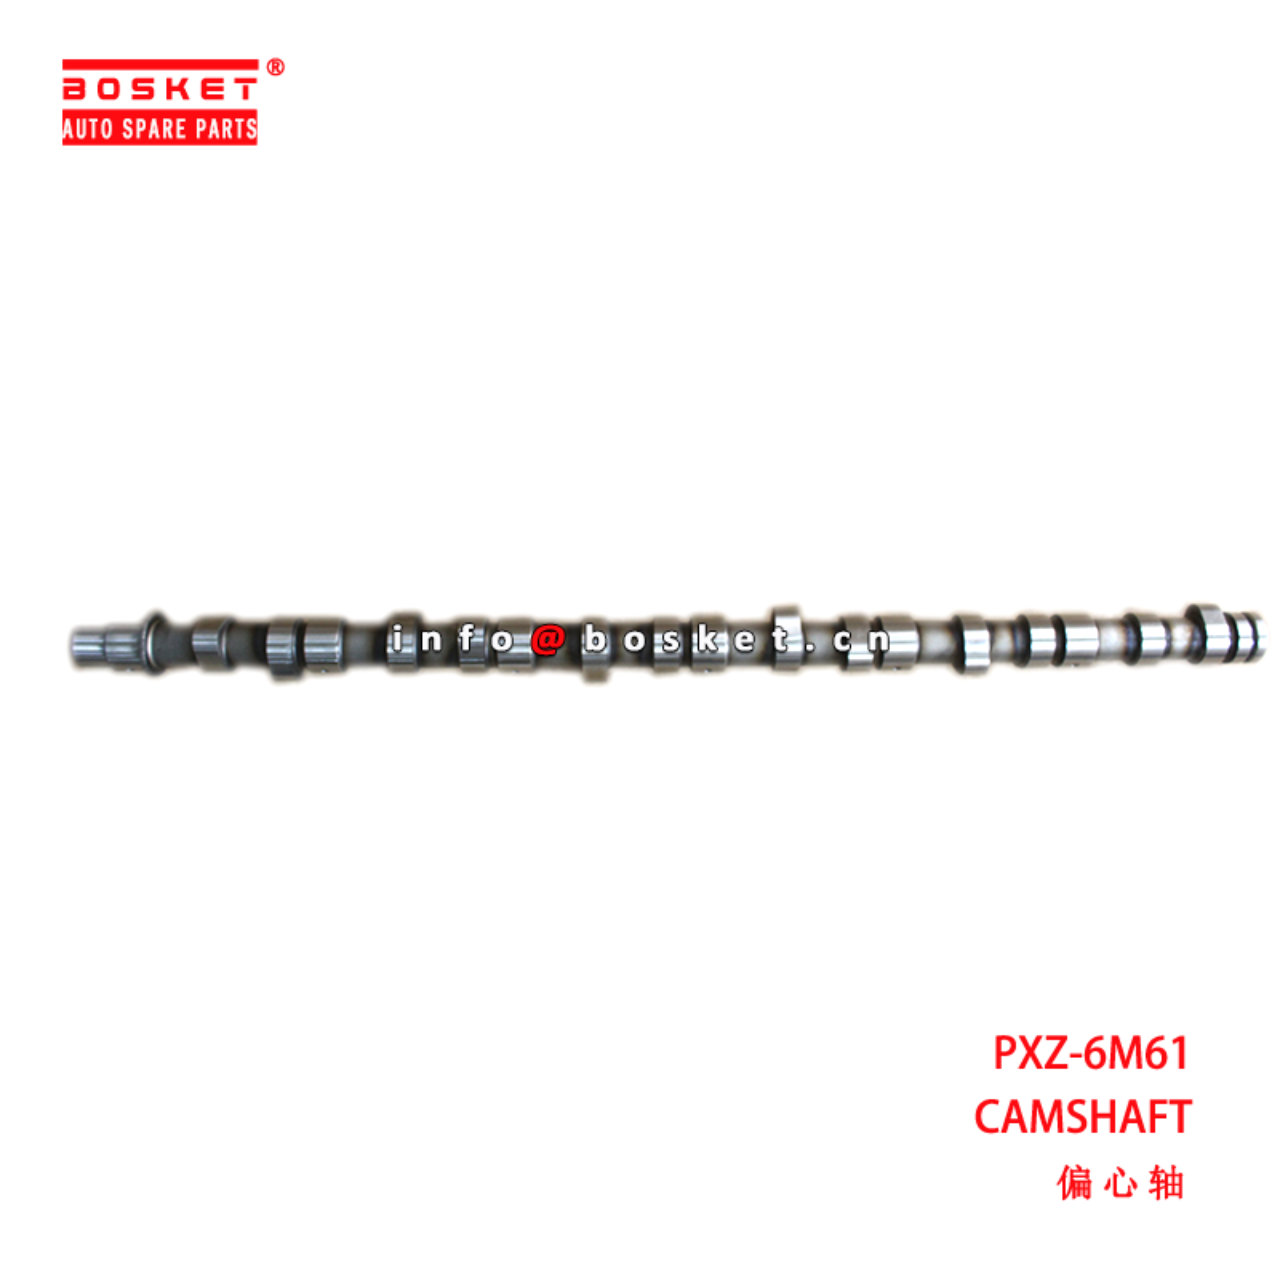 PXZ-6M61 Camshaft suitable for ISUZU  6M61 PXZ-6M6...